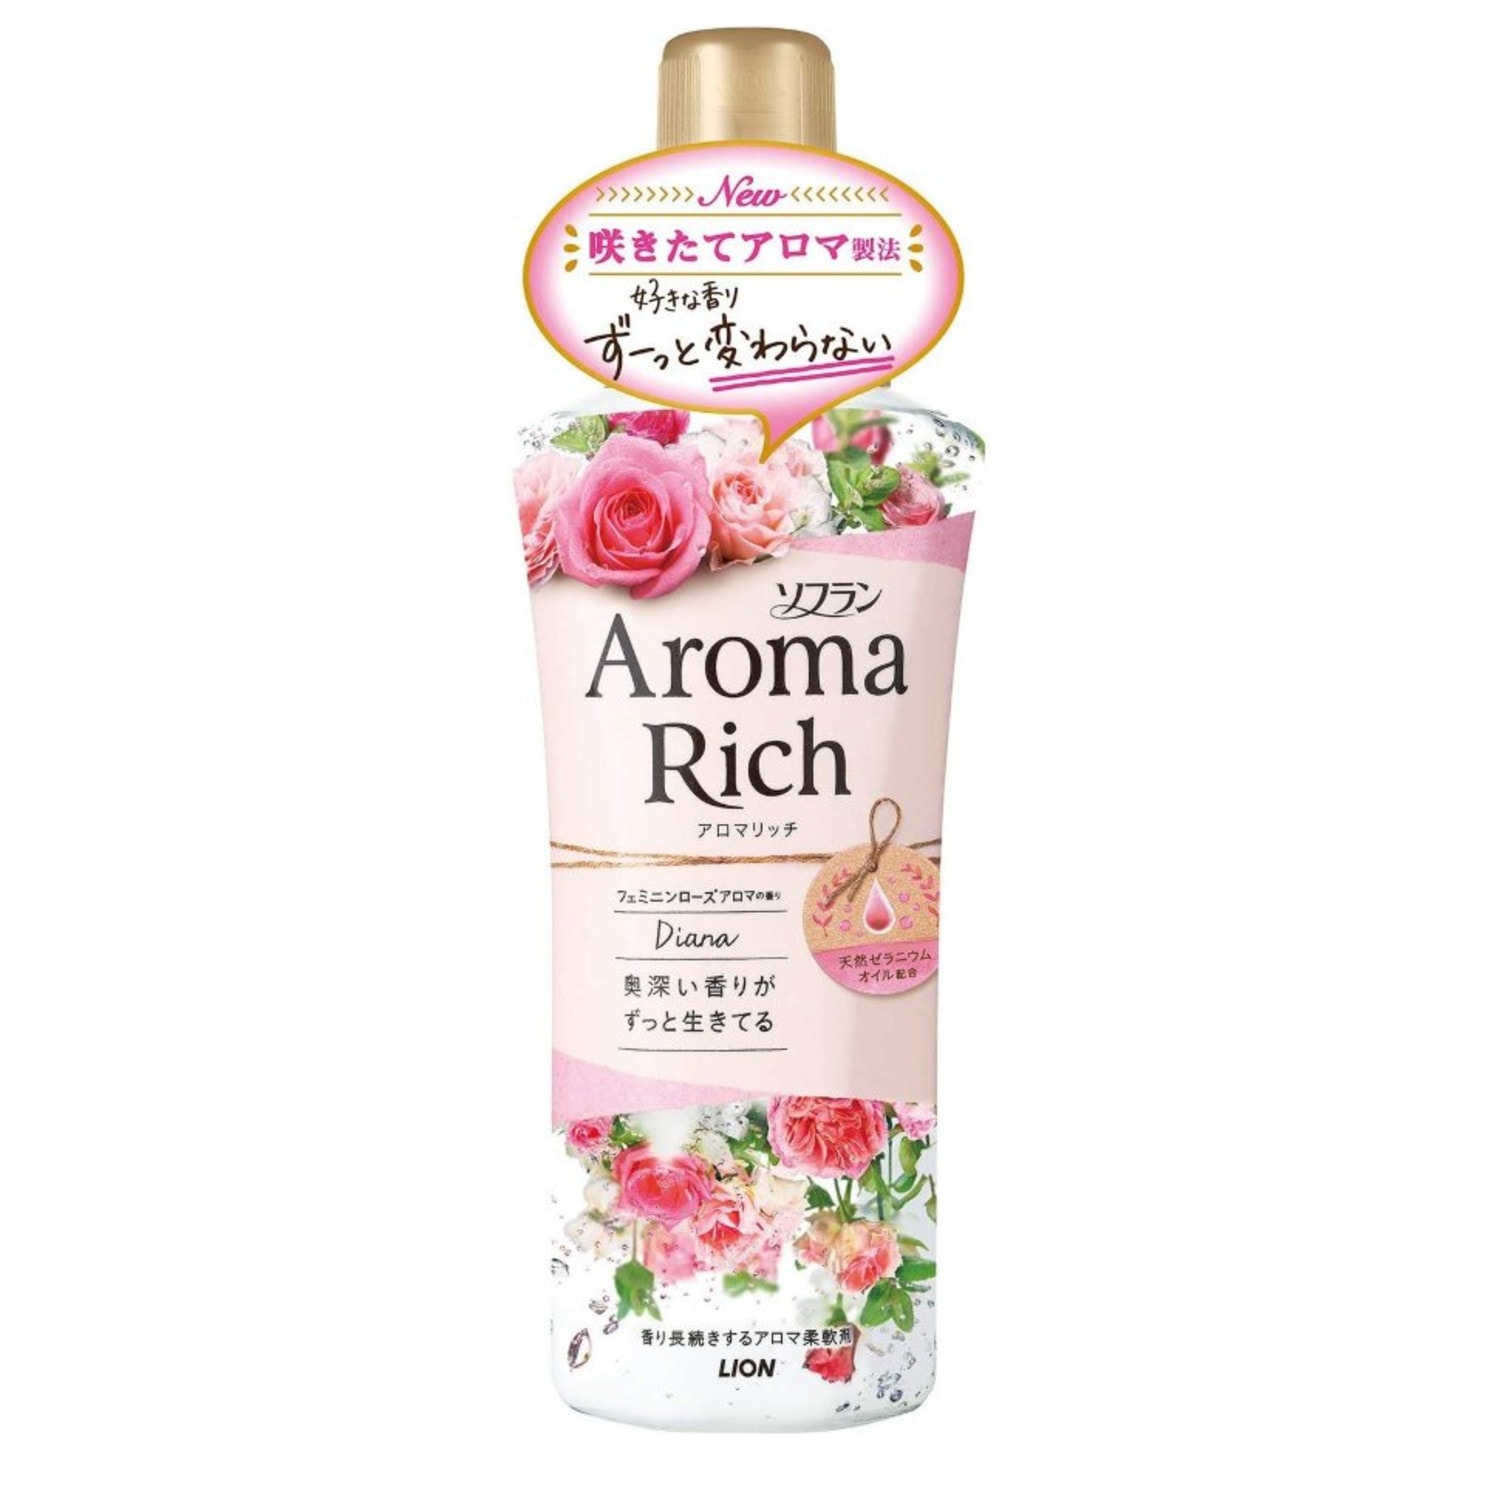  LION  Aroma Rich Diana Кондиционер для белья  с богатым ароматом натуральных роз, 520мл. / 292357